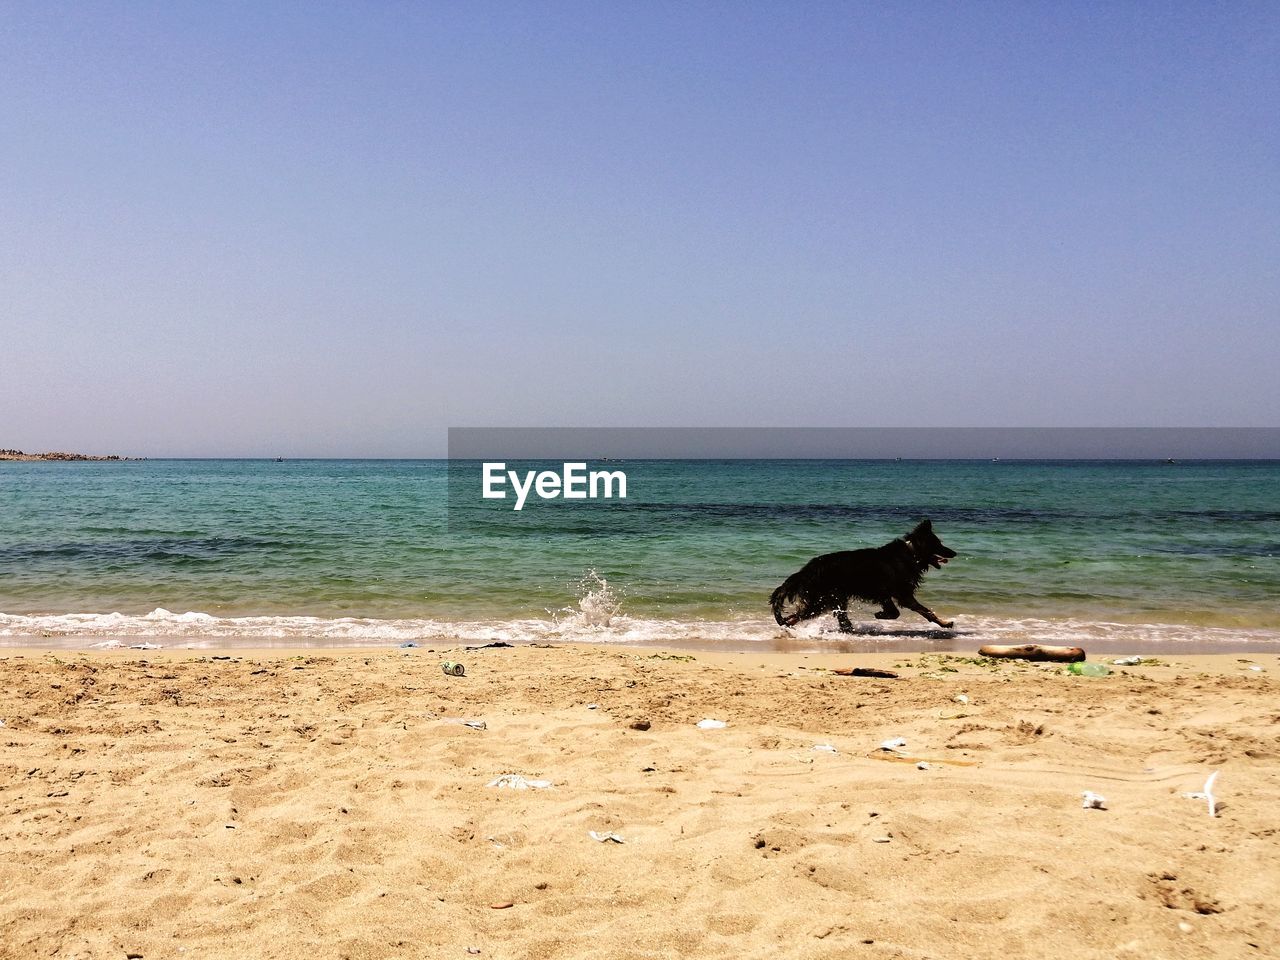 DOG ON BEACH AGAINST SKY